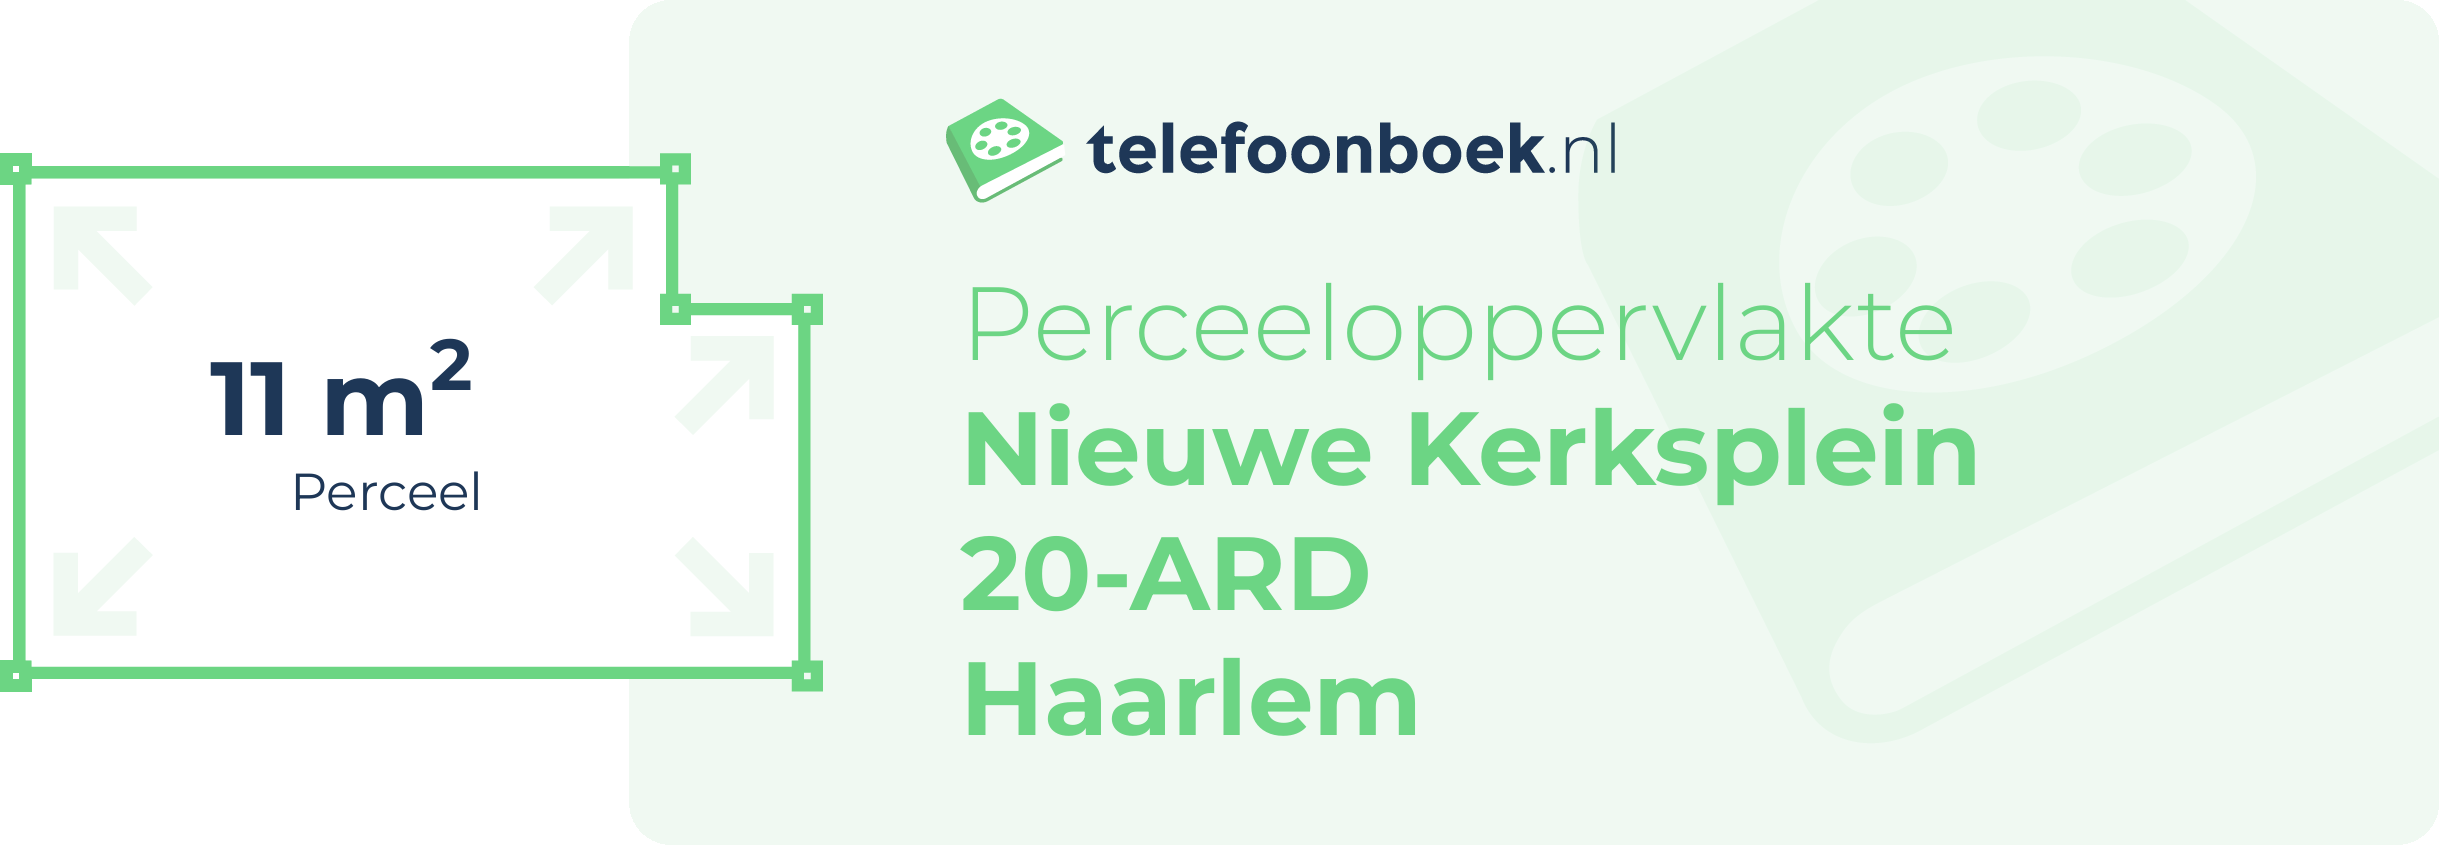 Perceeloppervlakte Nieuwe Kerksplein 20-ARD Haarlem